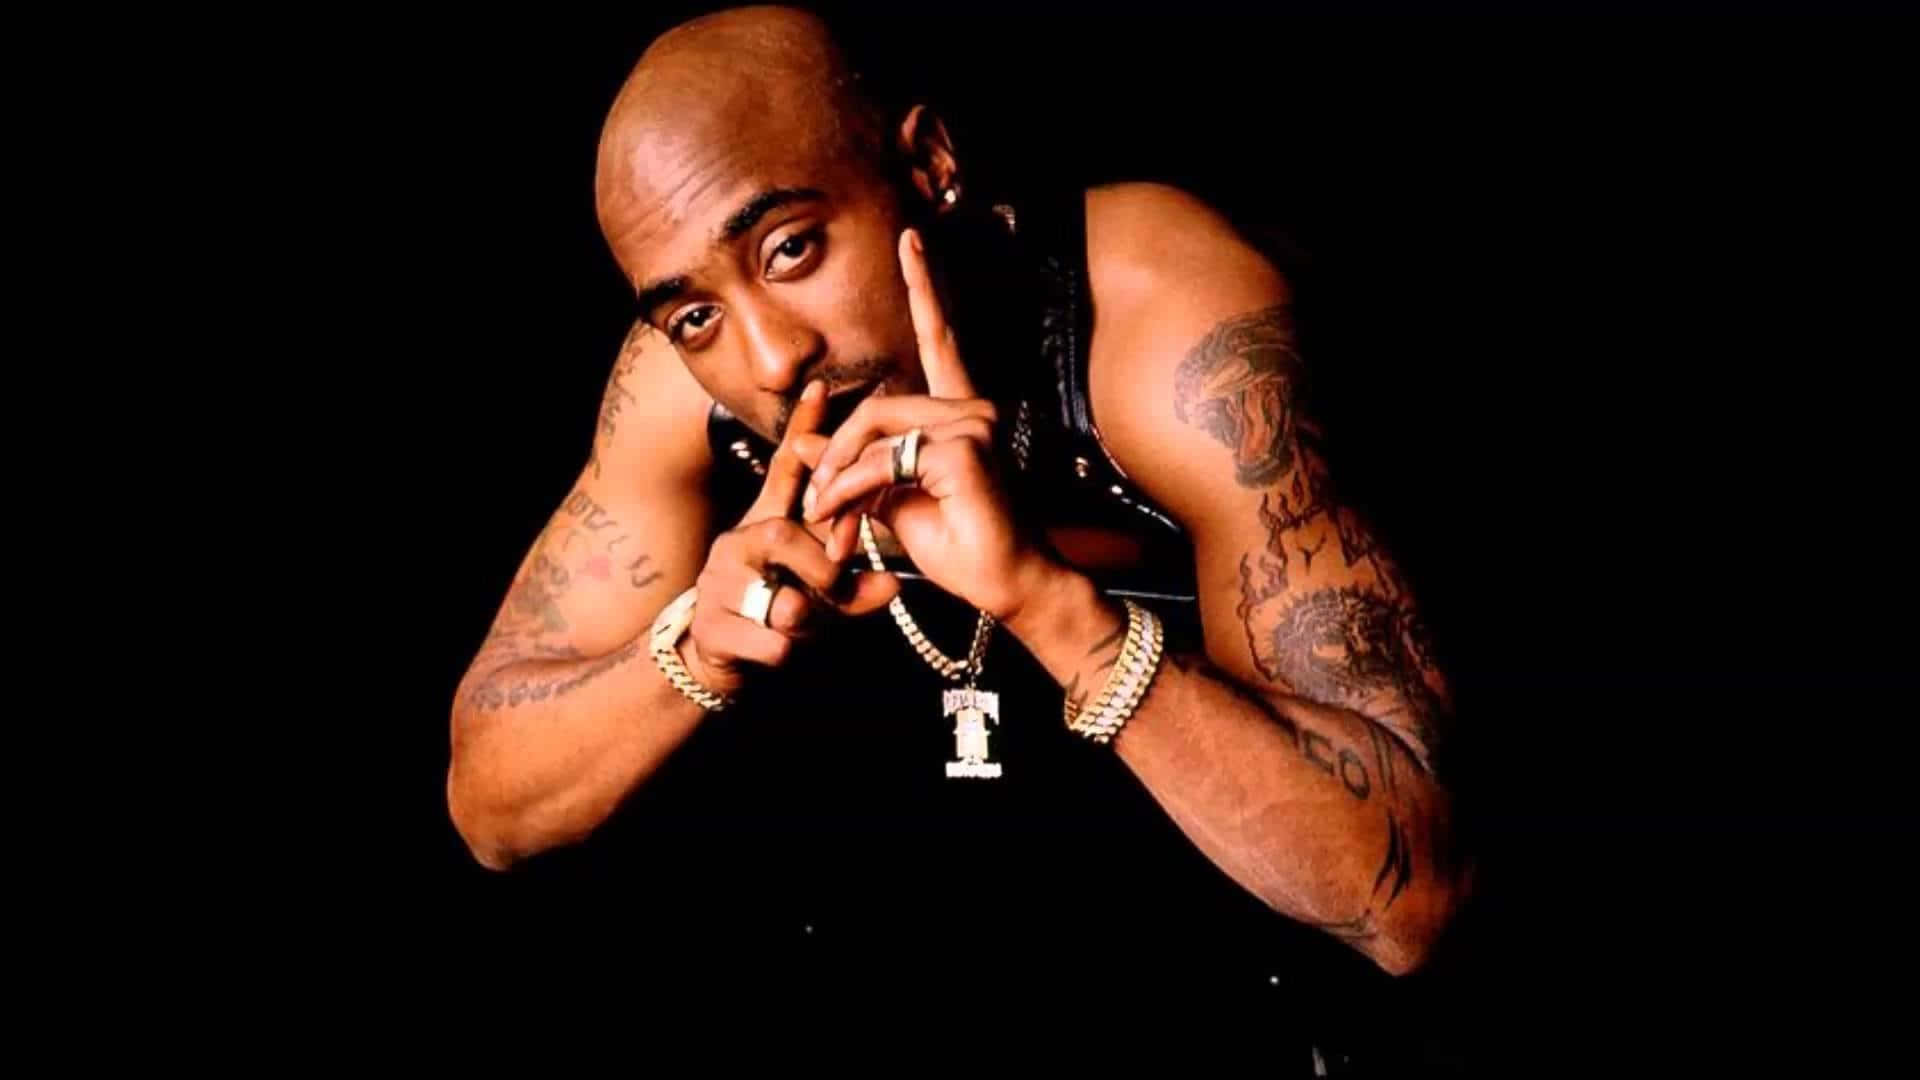 Imperodello Stato D'animo - Tupac Shakur